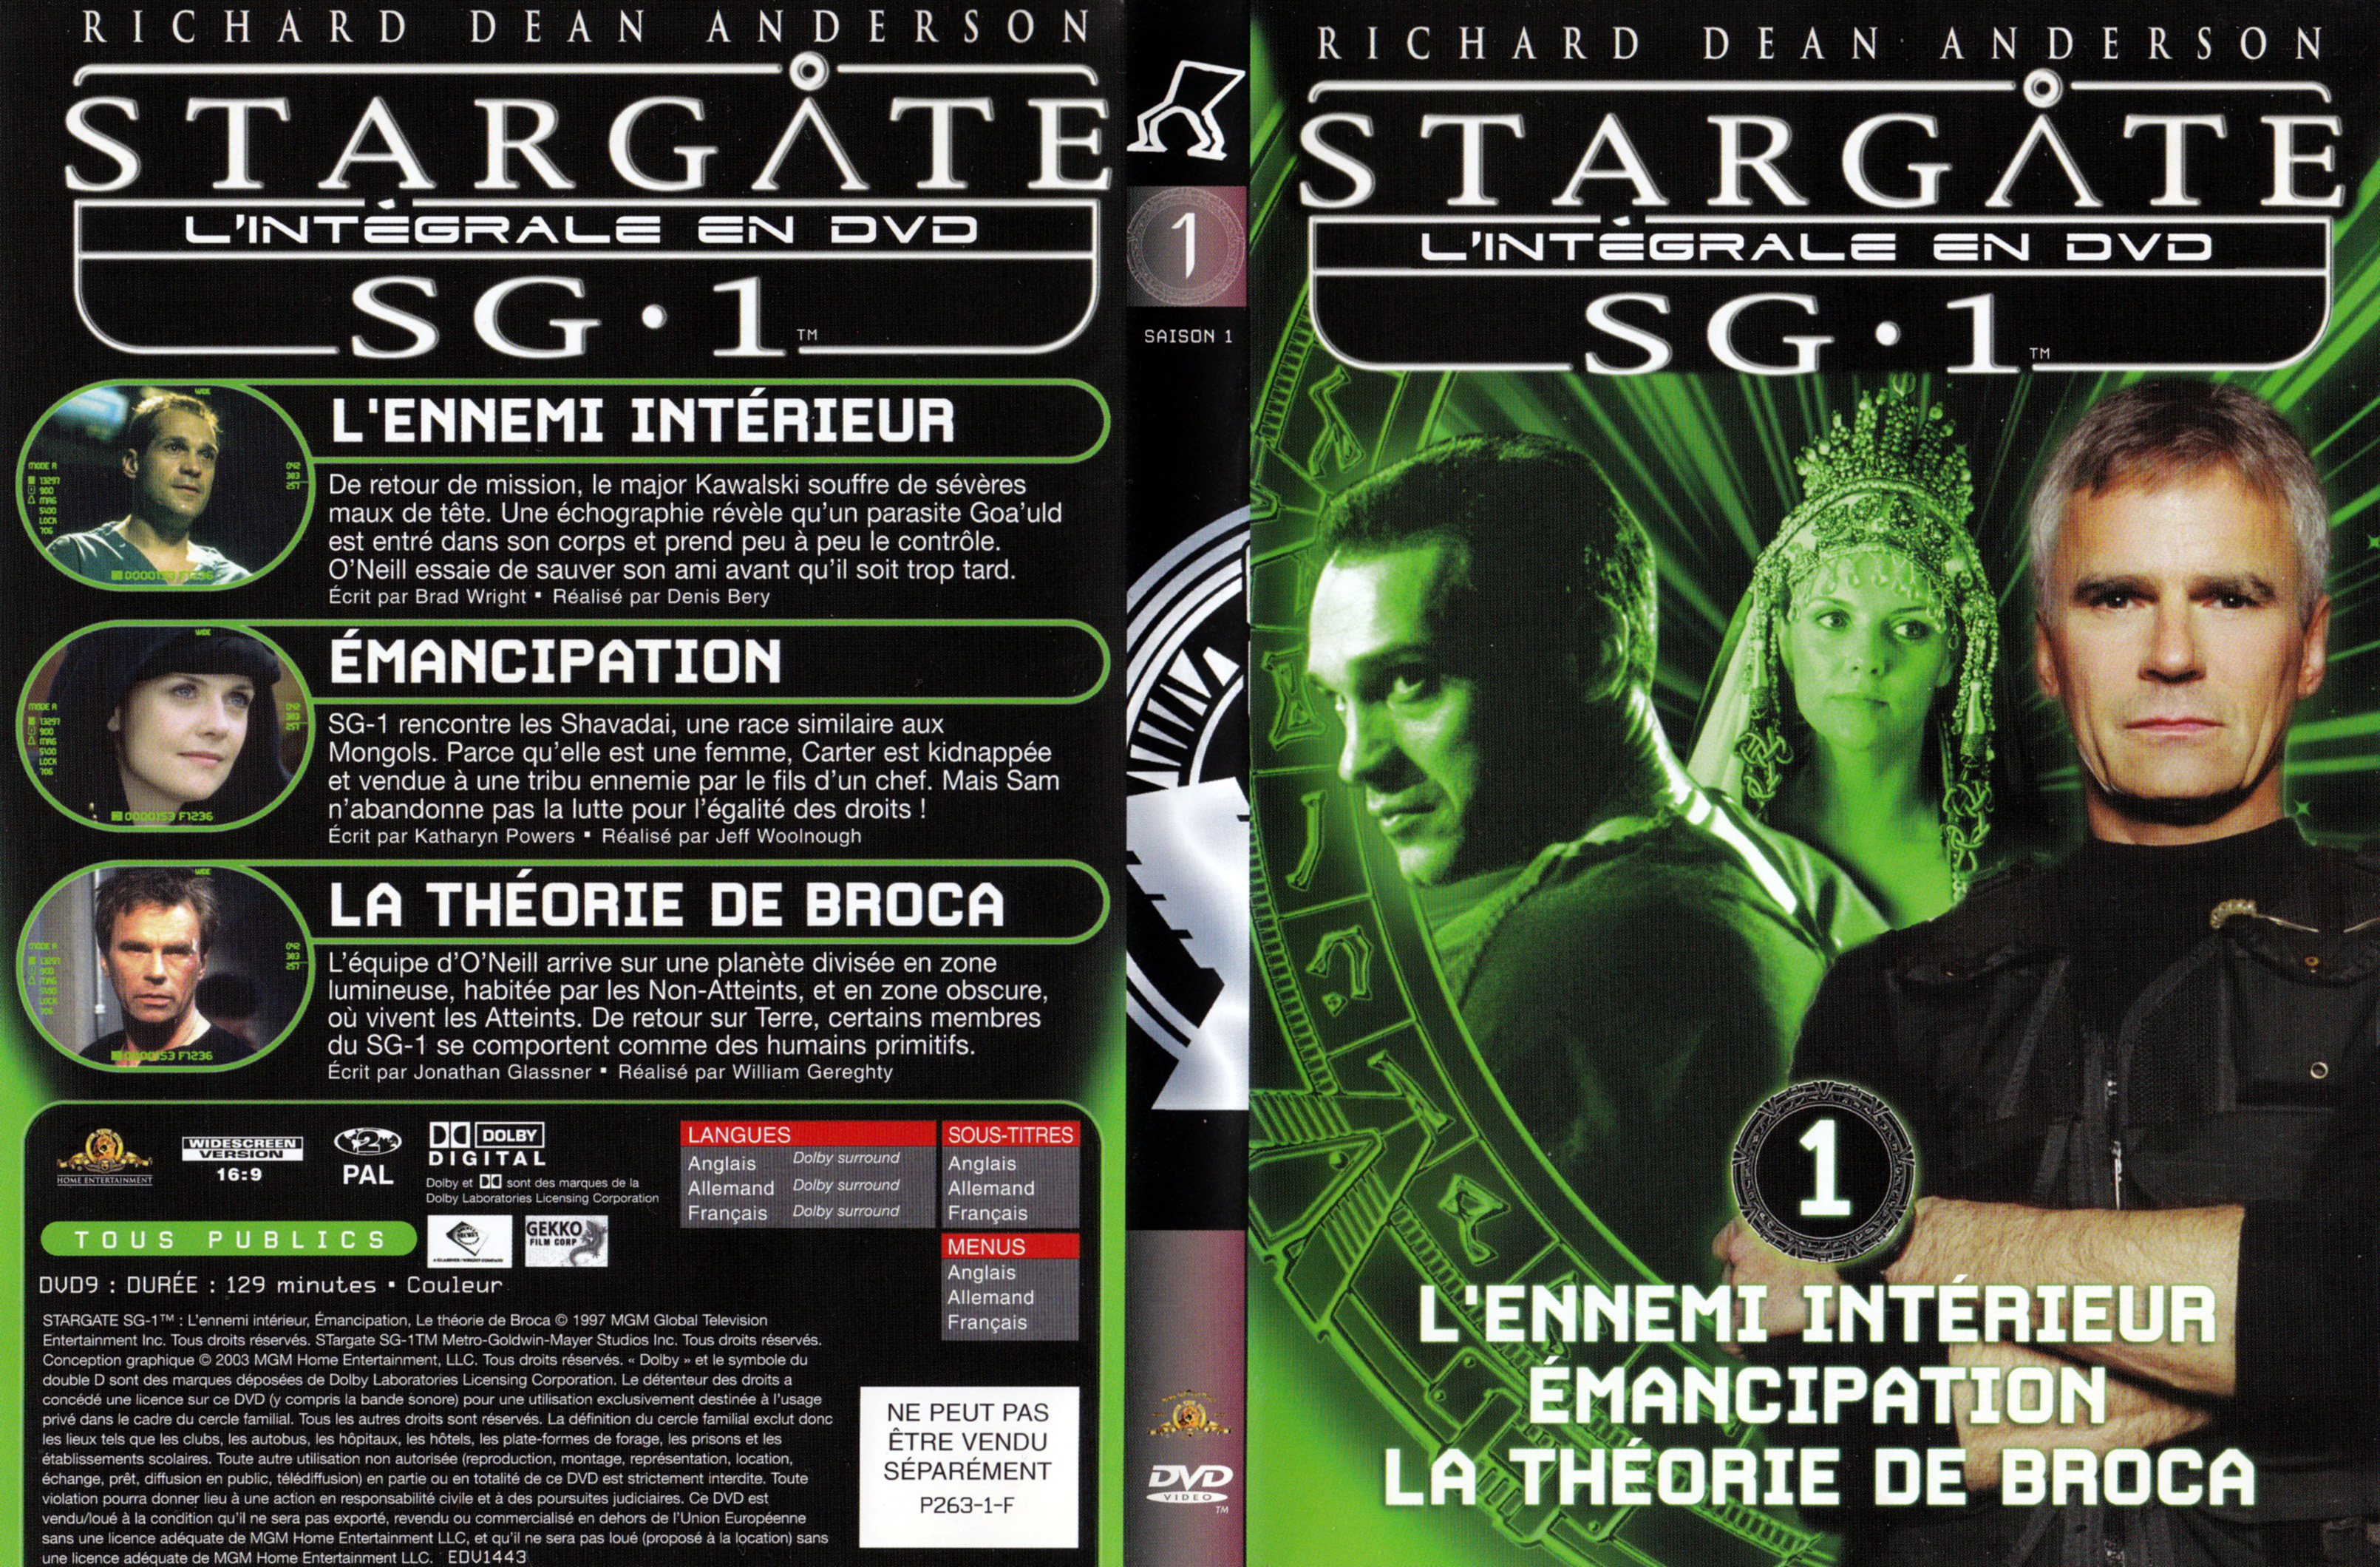 Jaquette DVD Stargate SG1 Intgrale Saison 1 vol 01